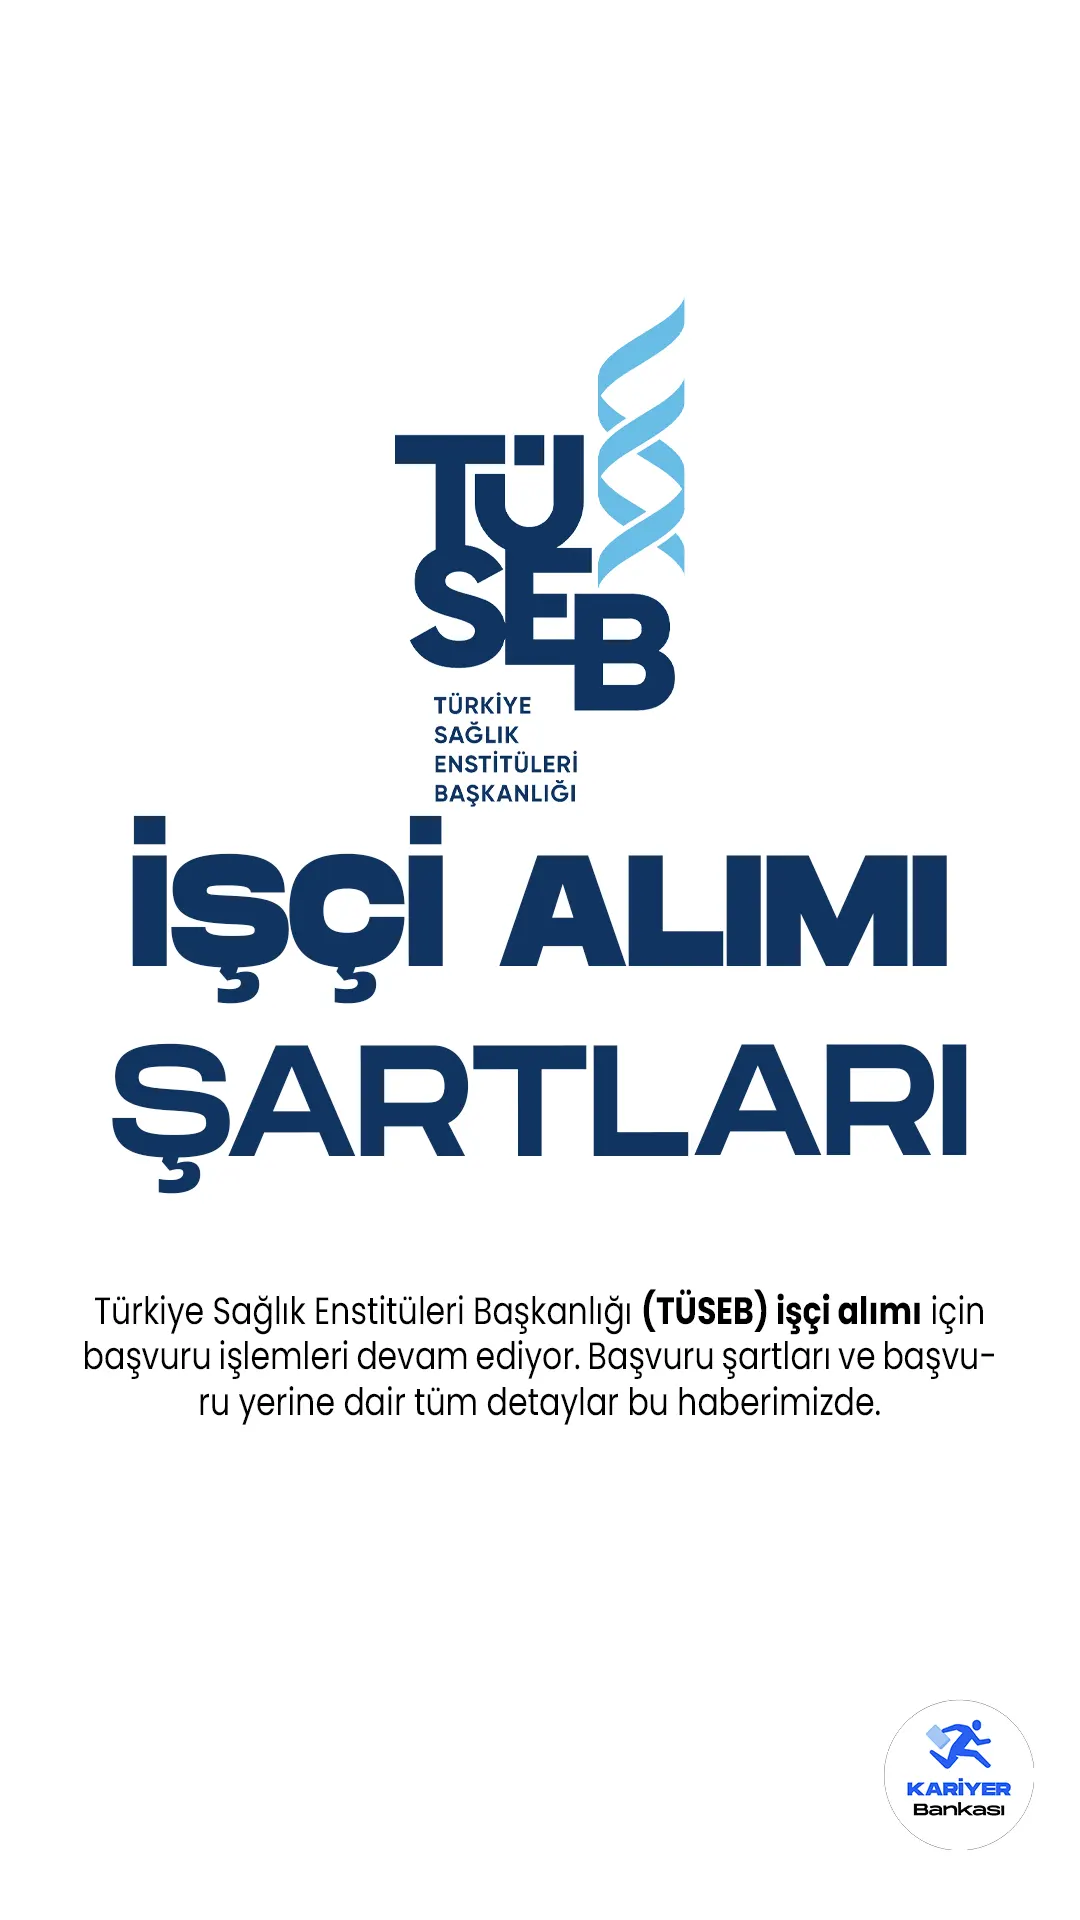 Türkiye Sağlık Enstitüleri Başkanlığı (TÜSEB) işçi alımı için başvuru işlemleri devam ediyor. Yayımlanan duyuruda, Türkiye Sağlık Enstitüleri Başkanlığı'na 61 işçi alımı yapılacağına yer verildi. İşçi alımı başvuruları 26 Mayıs 2023 tarihinde sona erecek. Başvuru yapacak adayların genel ve özel şartları taşıması gerektiği belirtildi.